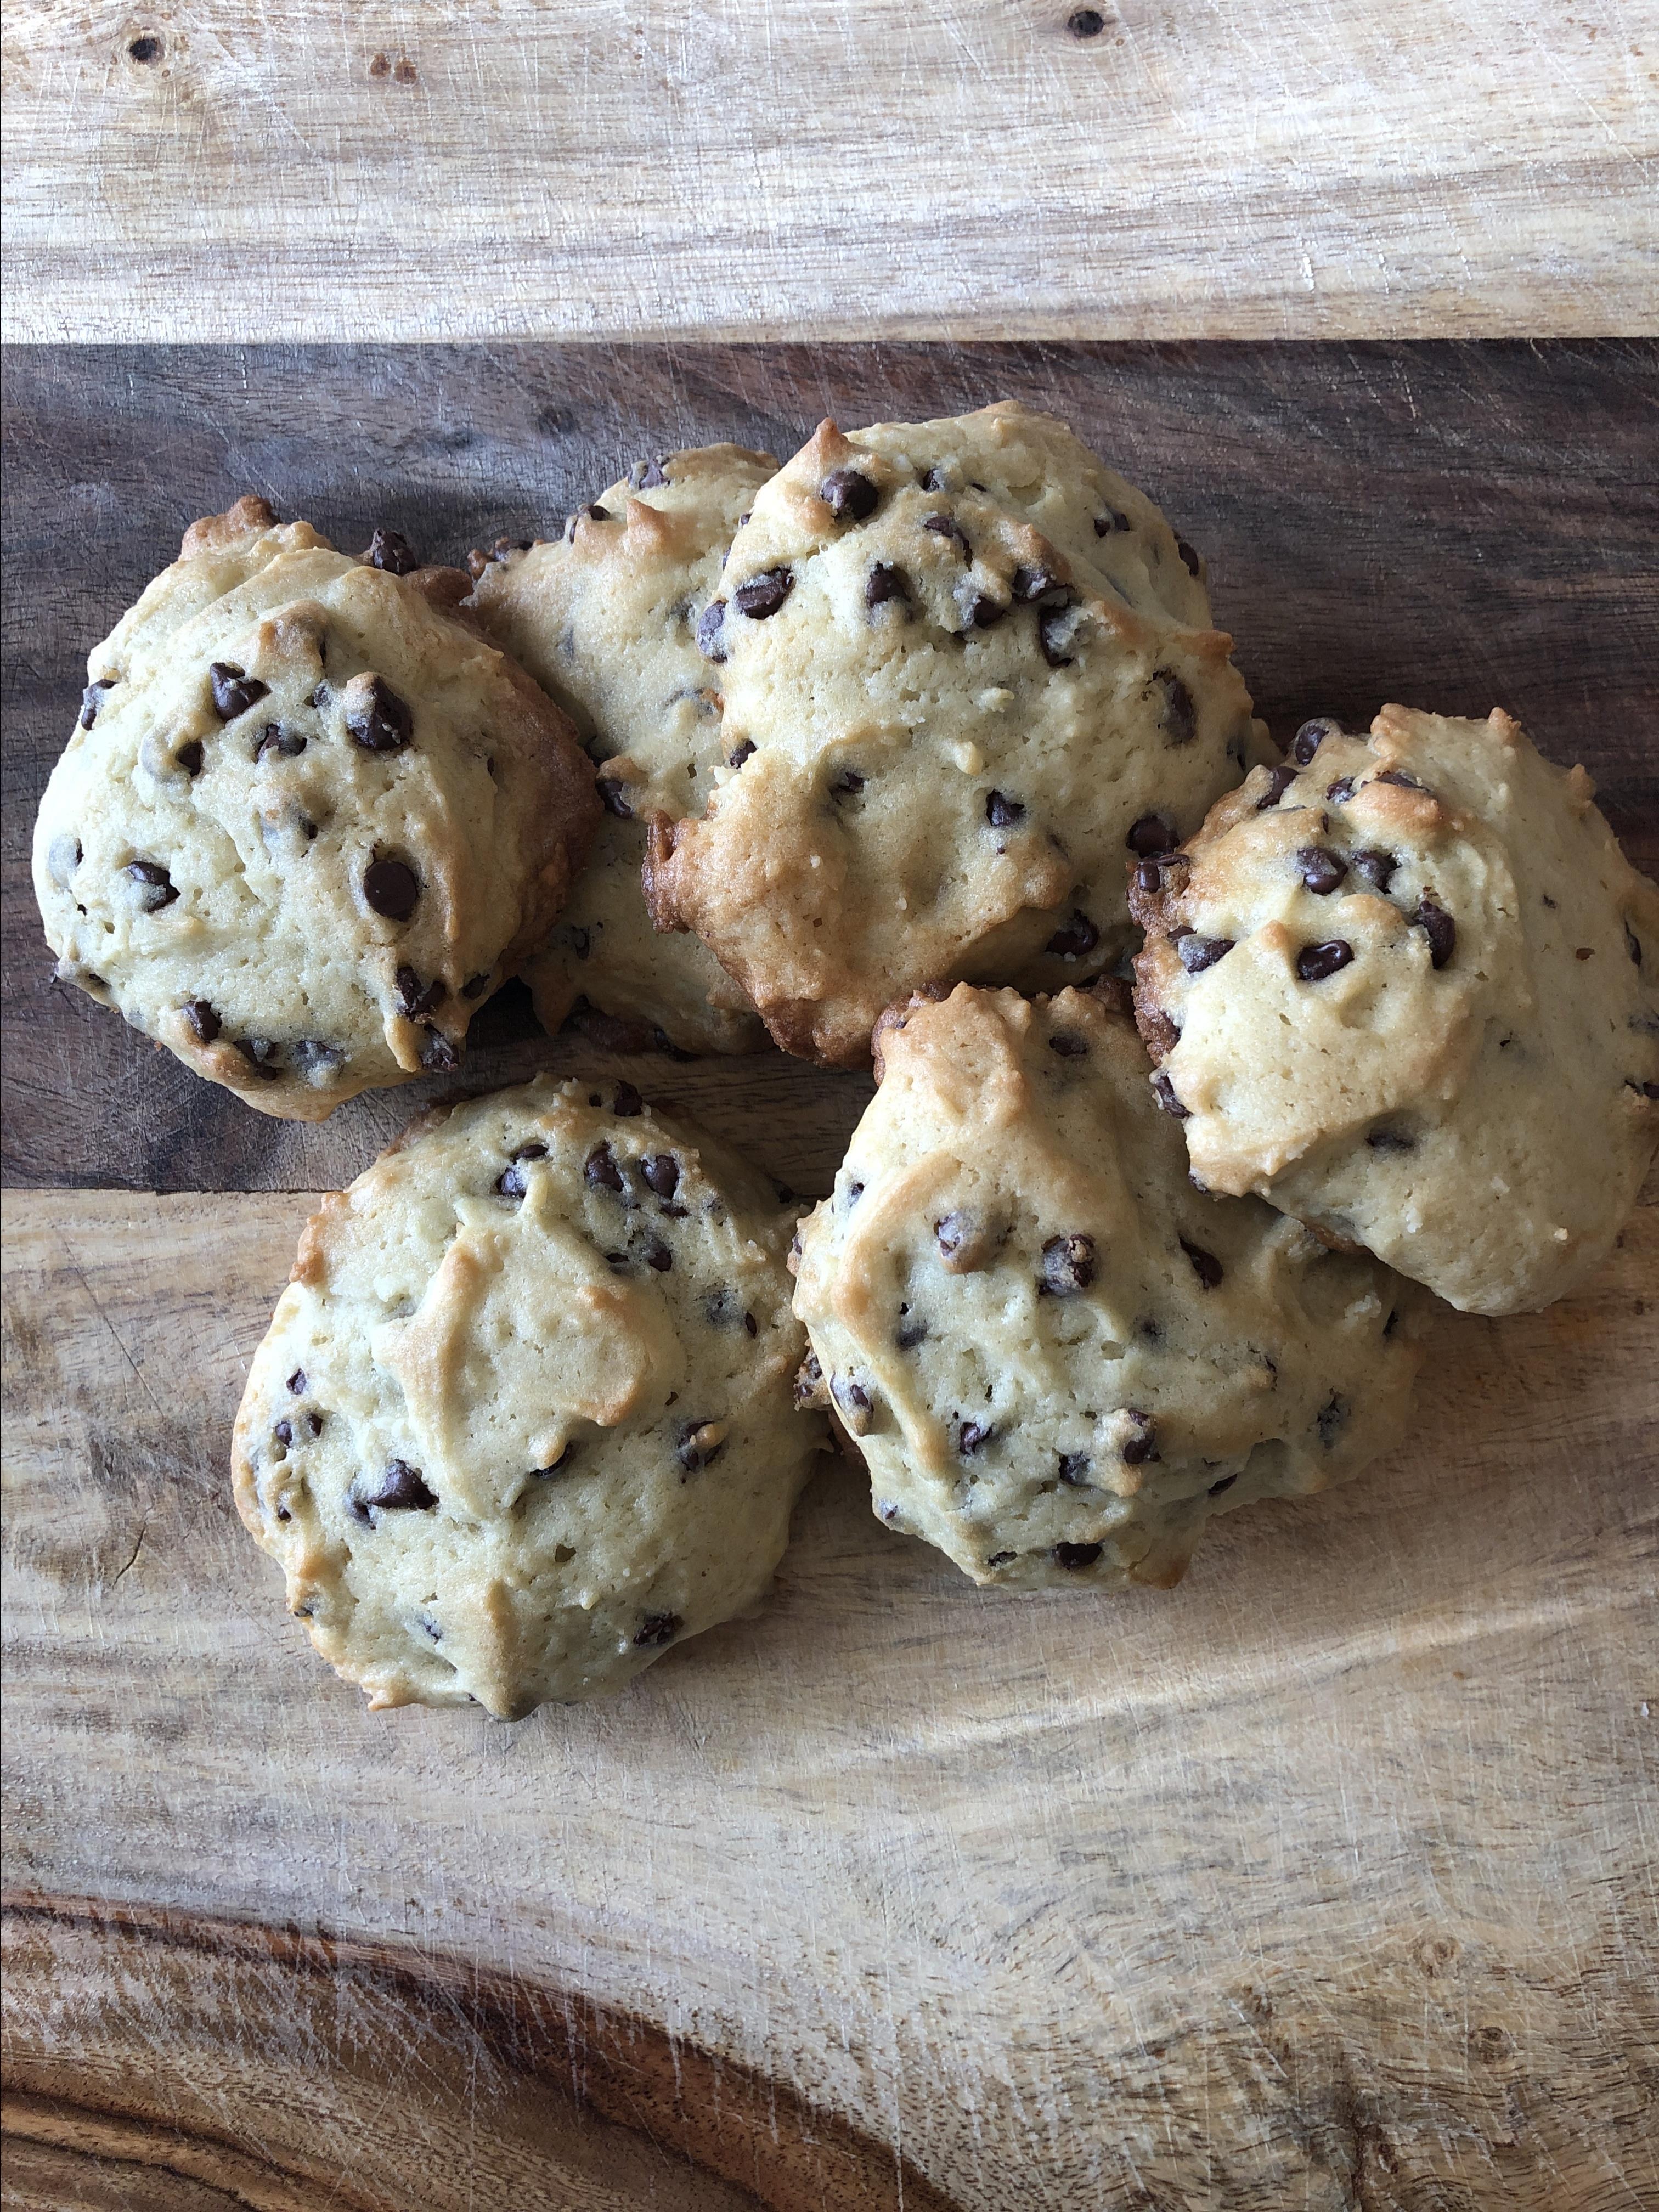 Sour Cream Chocolate Chip Cookies Recipe | Allrecipes